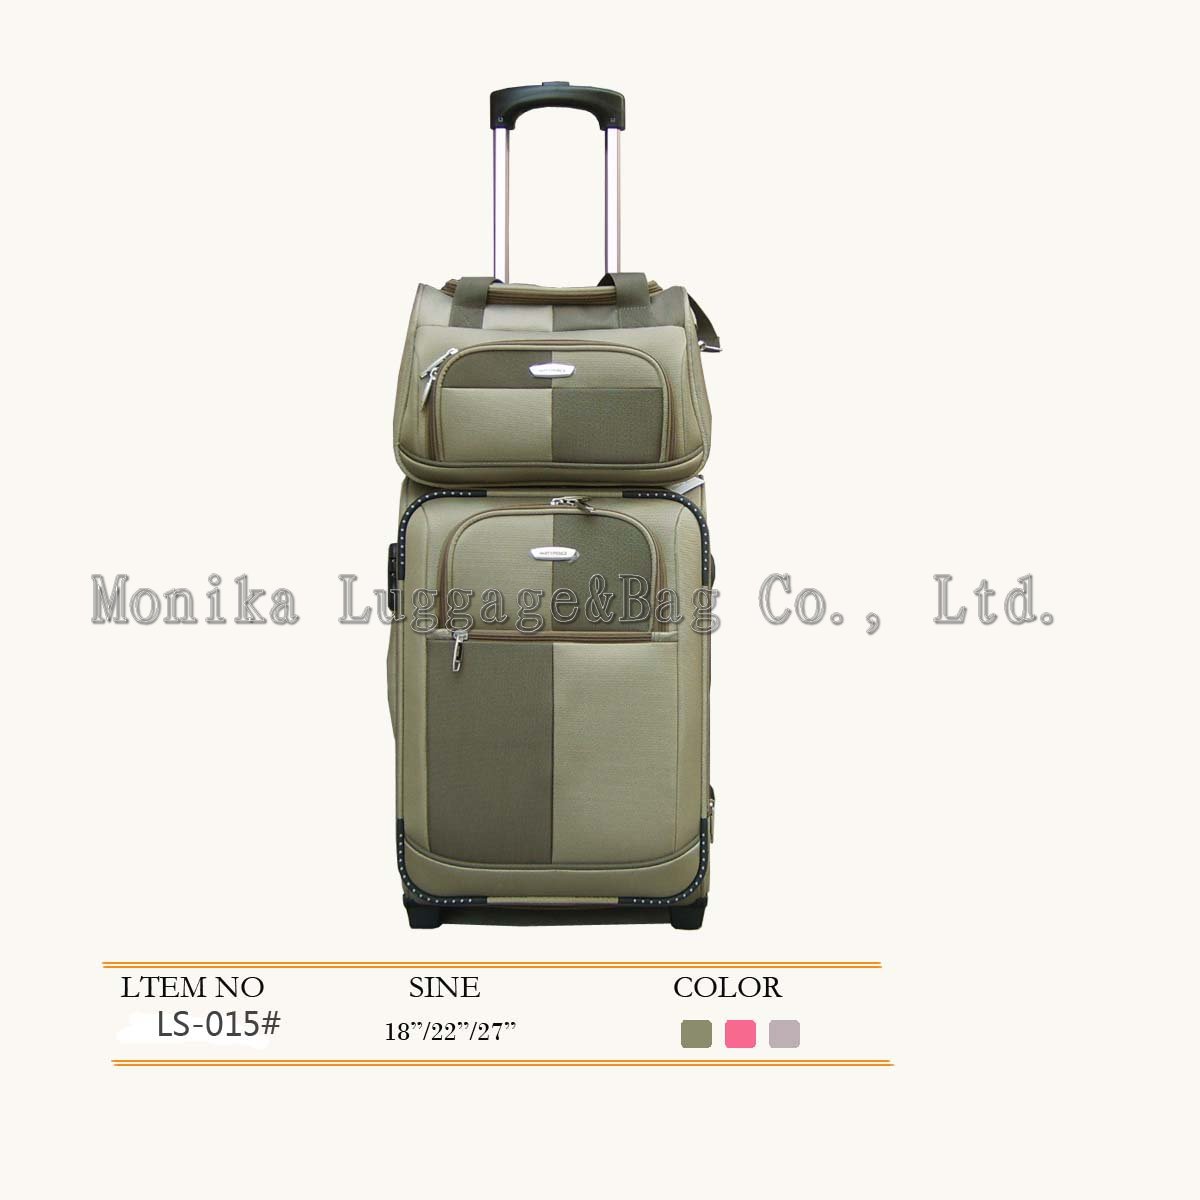 Luggage Case